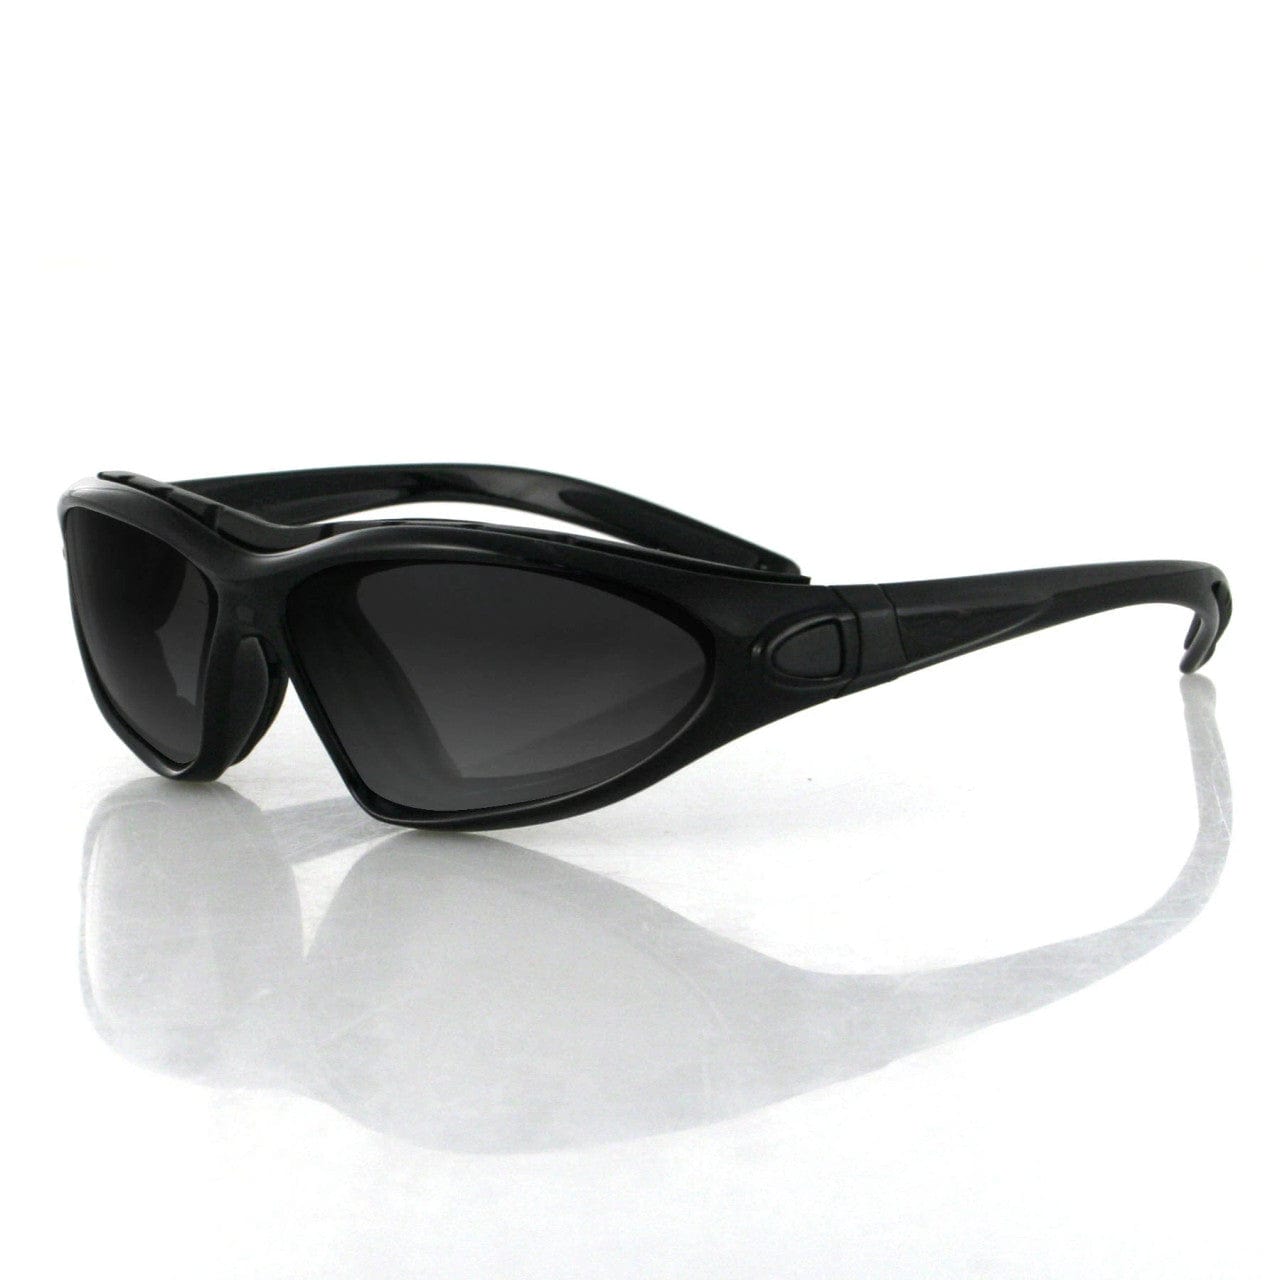 Bobster Girl's RoadMaster Convertible Sunglasses, Black Frame